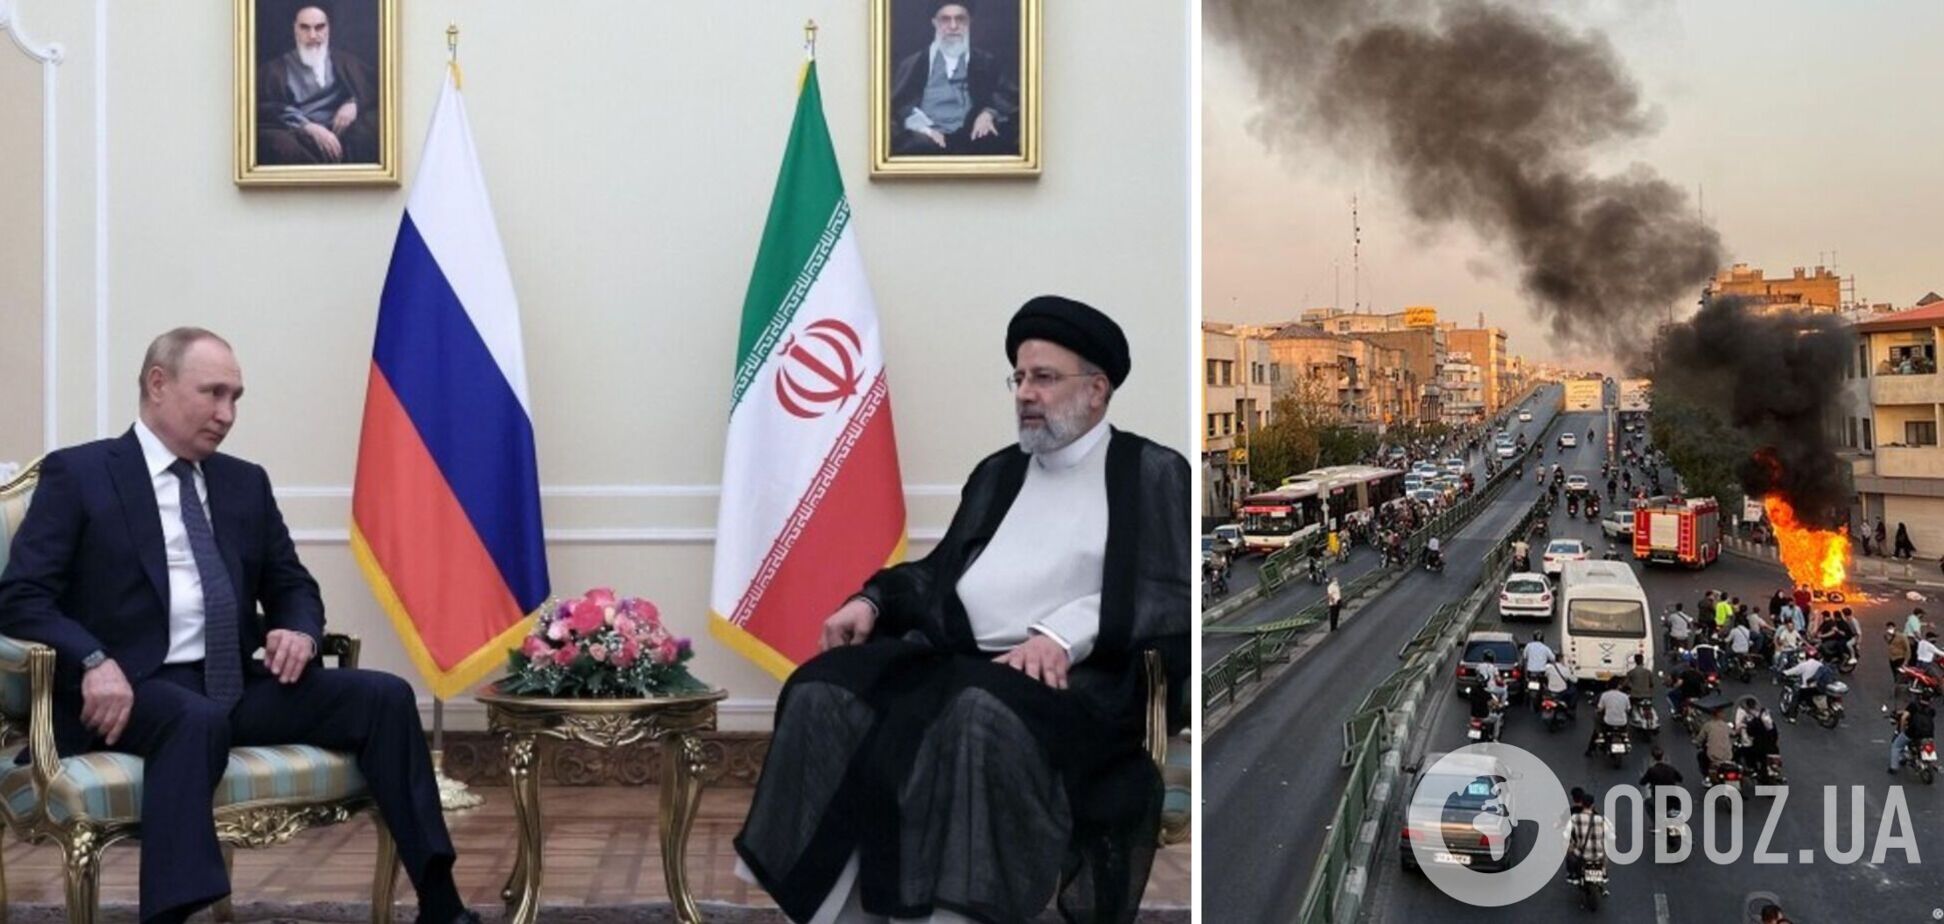 Іран звернувся до Росії за допомогою для придушення народних протестів – ЗМІ